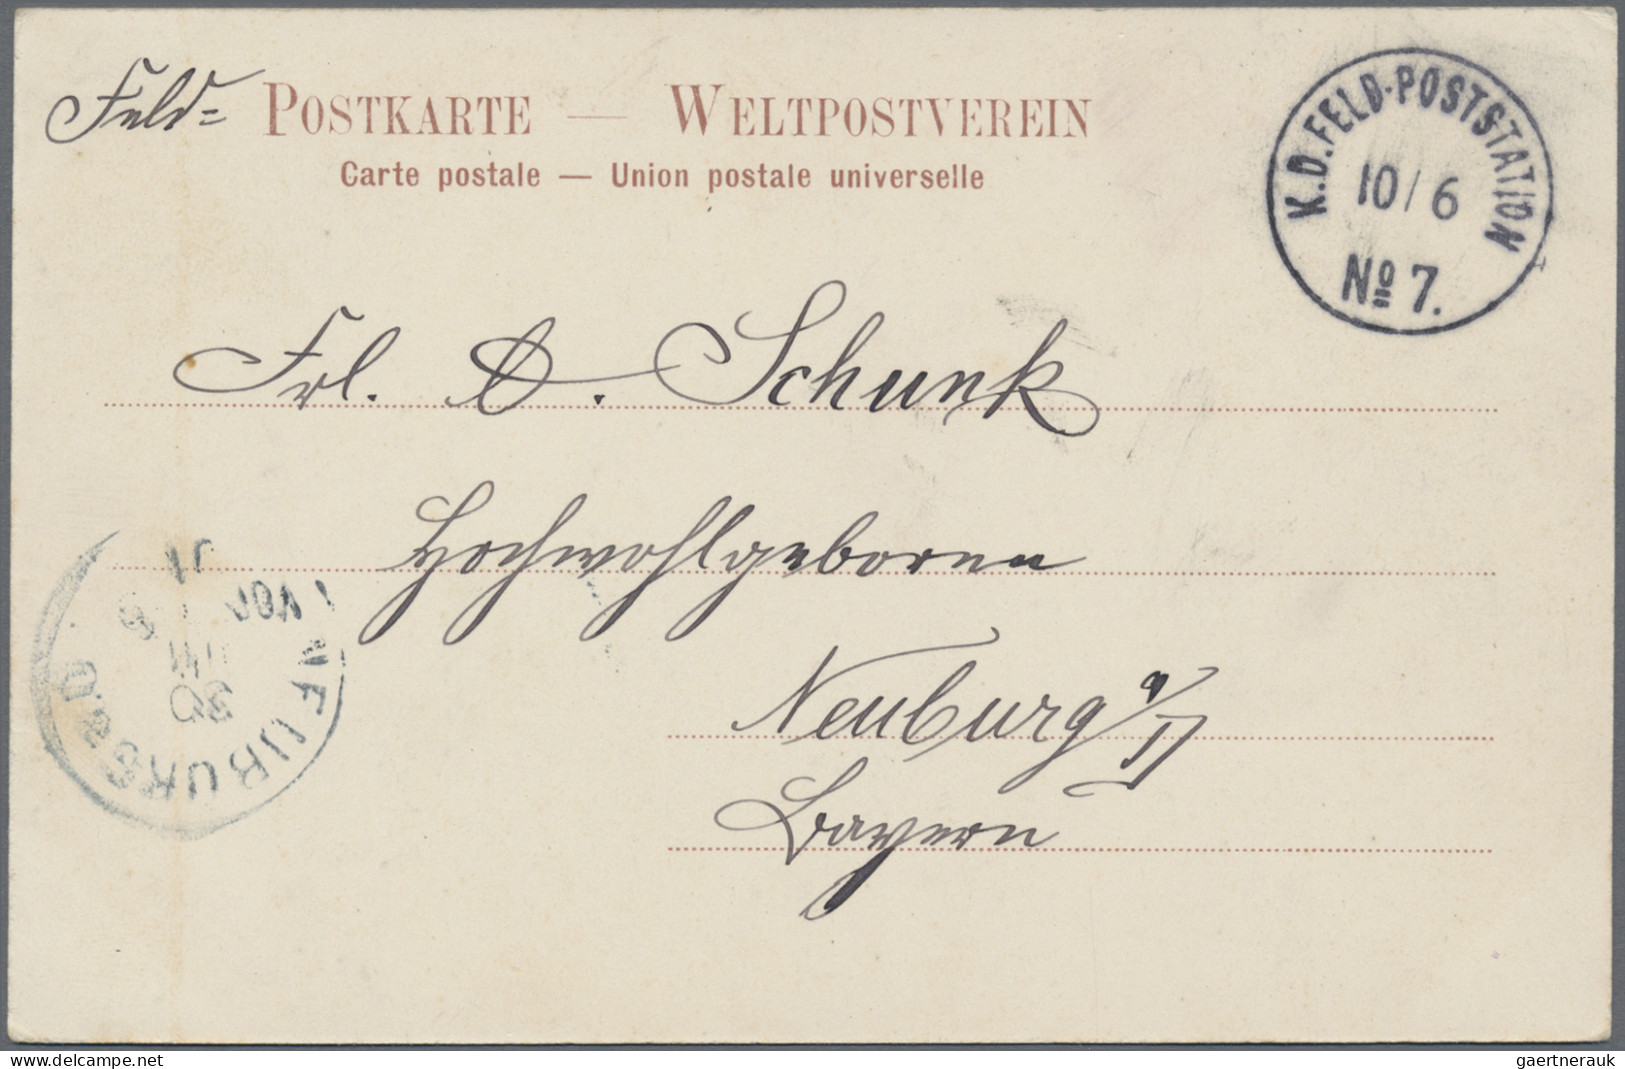 Deutsche Post in China: 1901/05, 12 AK alle nach Deutschland mit Stpl. Peking, H